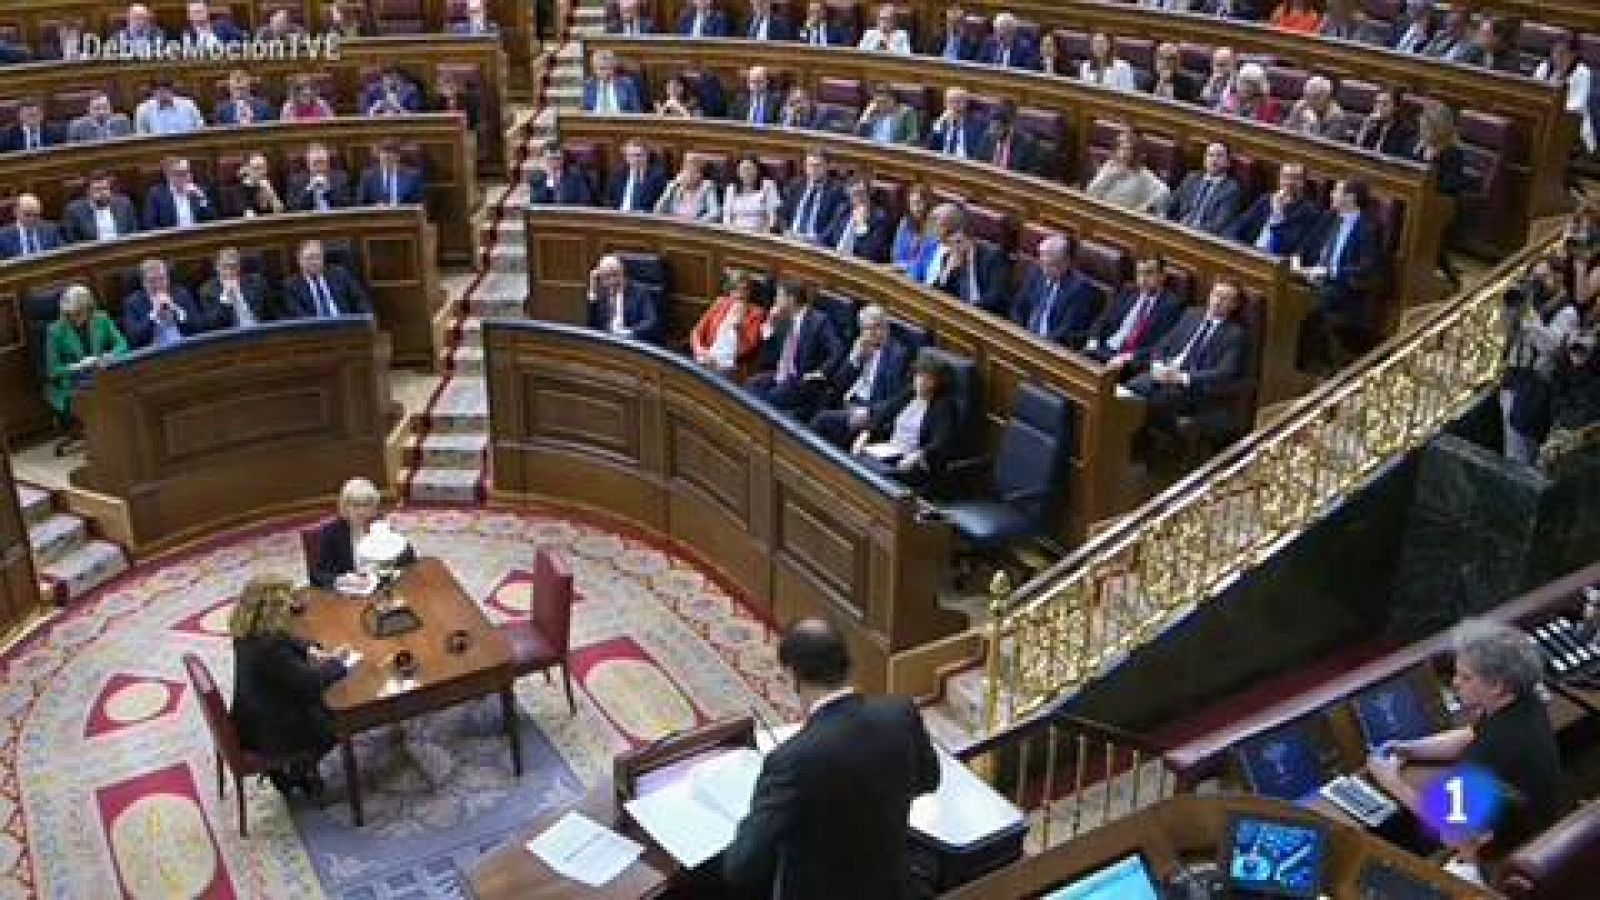 Moción de censura: primera intervención de Mariano Rajoy para responder a Ábalos